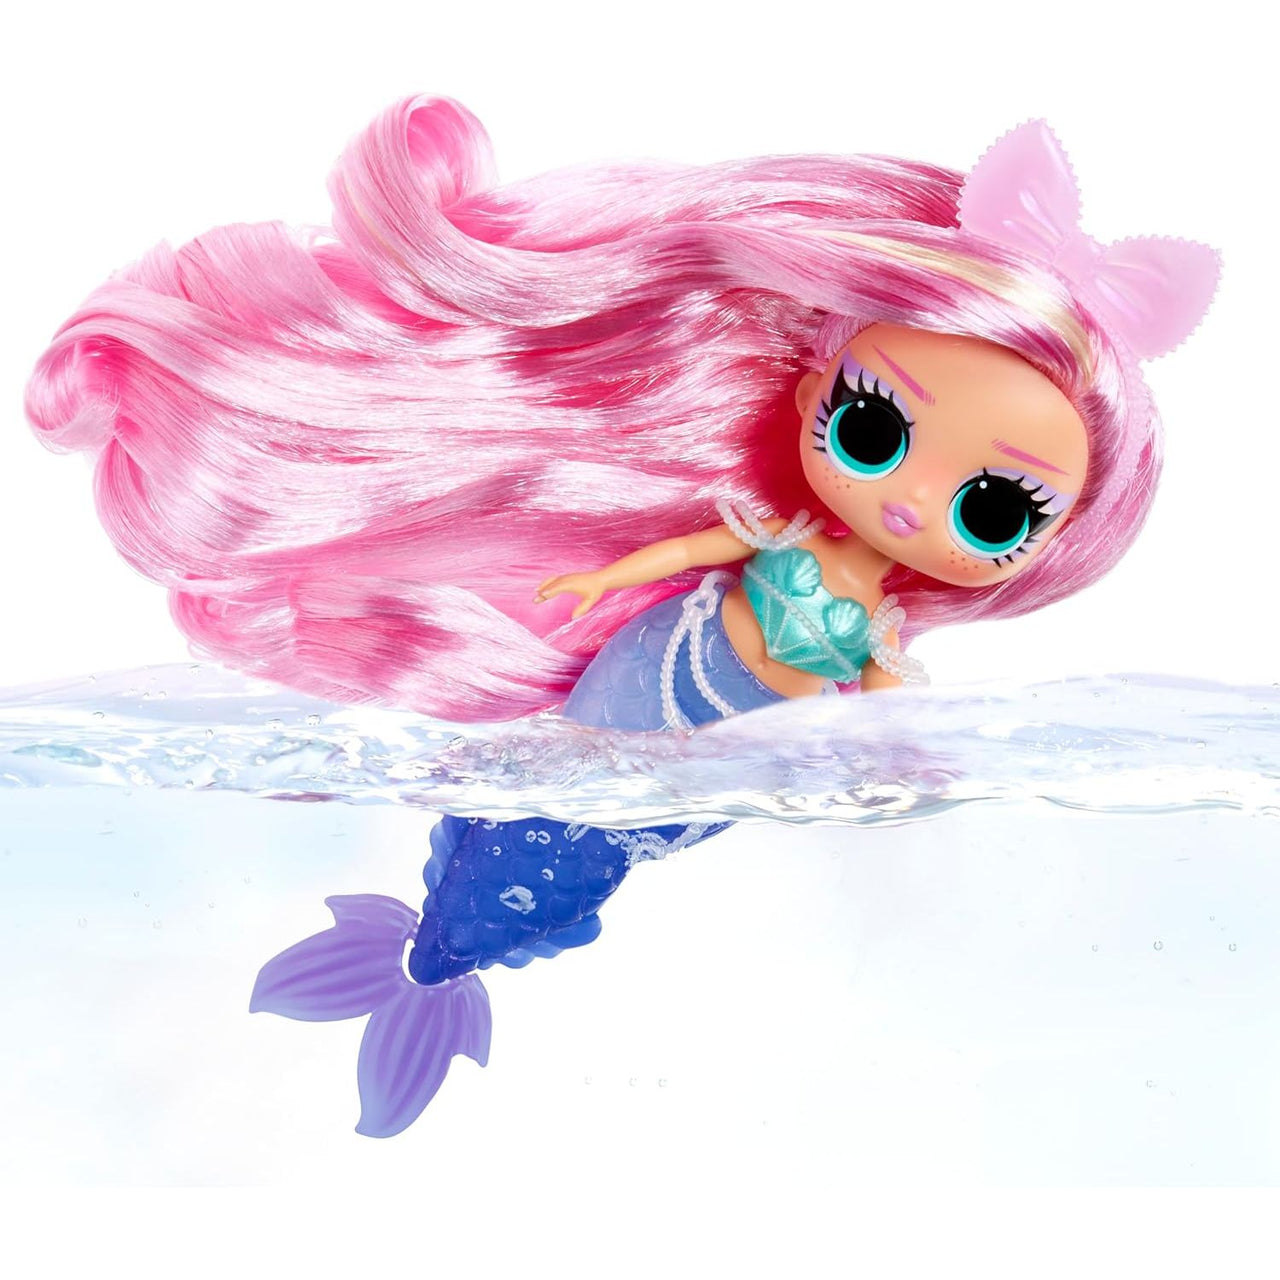 L.O.L Surprise Tweens Mermaid Doll - Lola Waves LOL Surprise